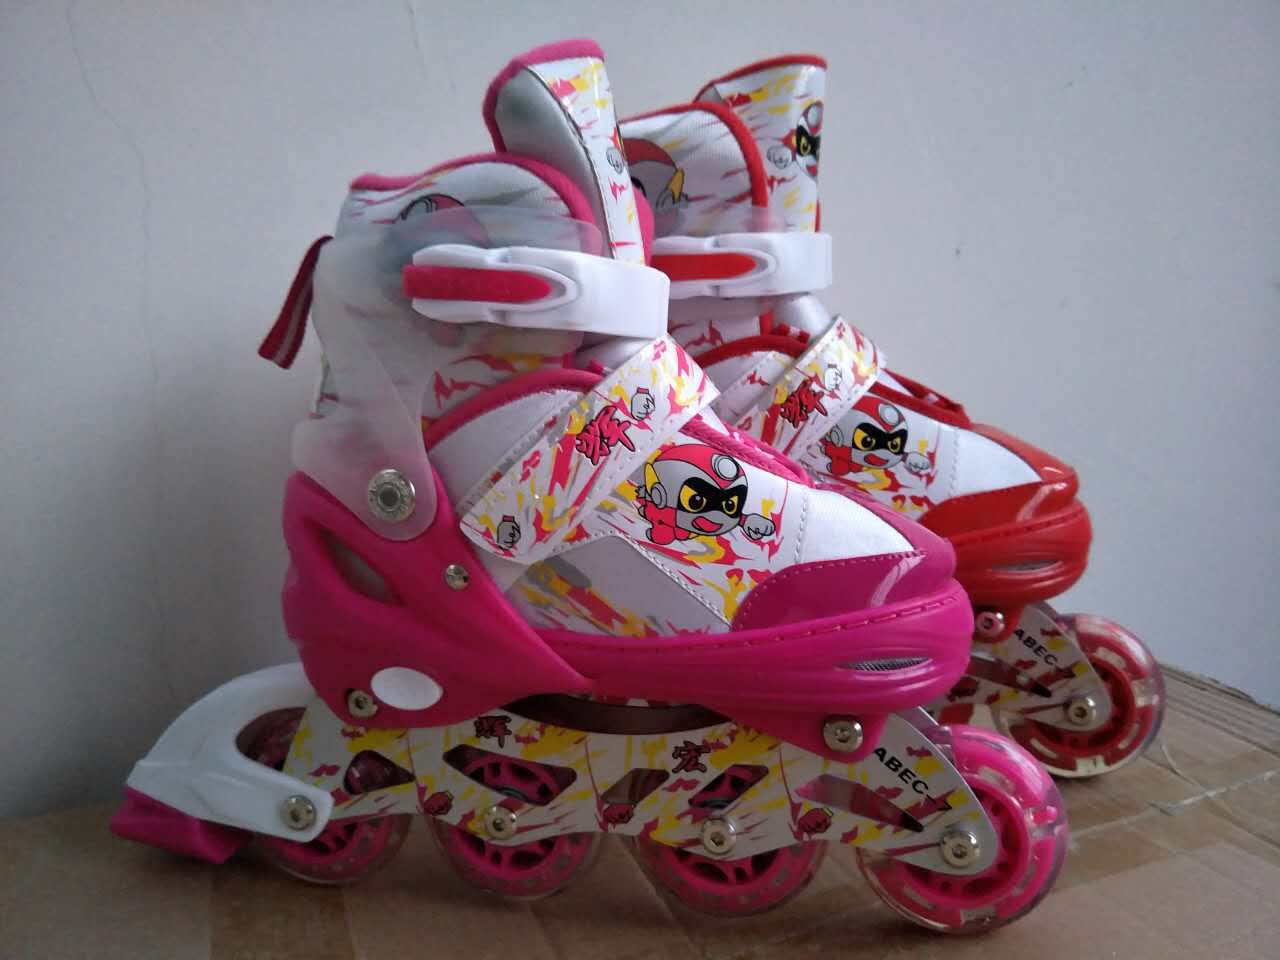 迪士尼儿童轮滑鞋 迪士尼轮滑鞋 迪士尼旱冰鞋 迪士尼溜冰鞋